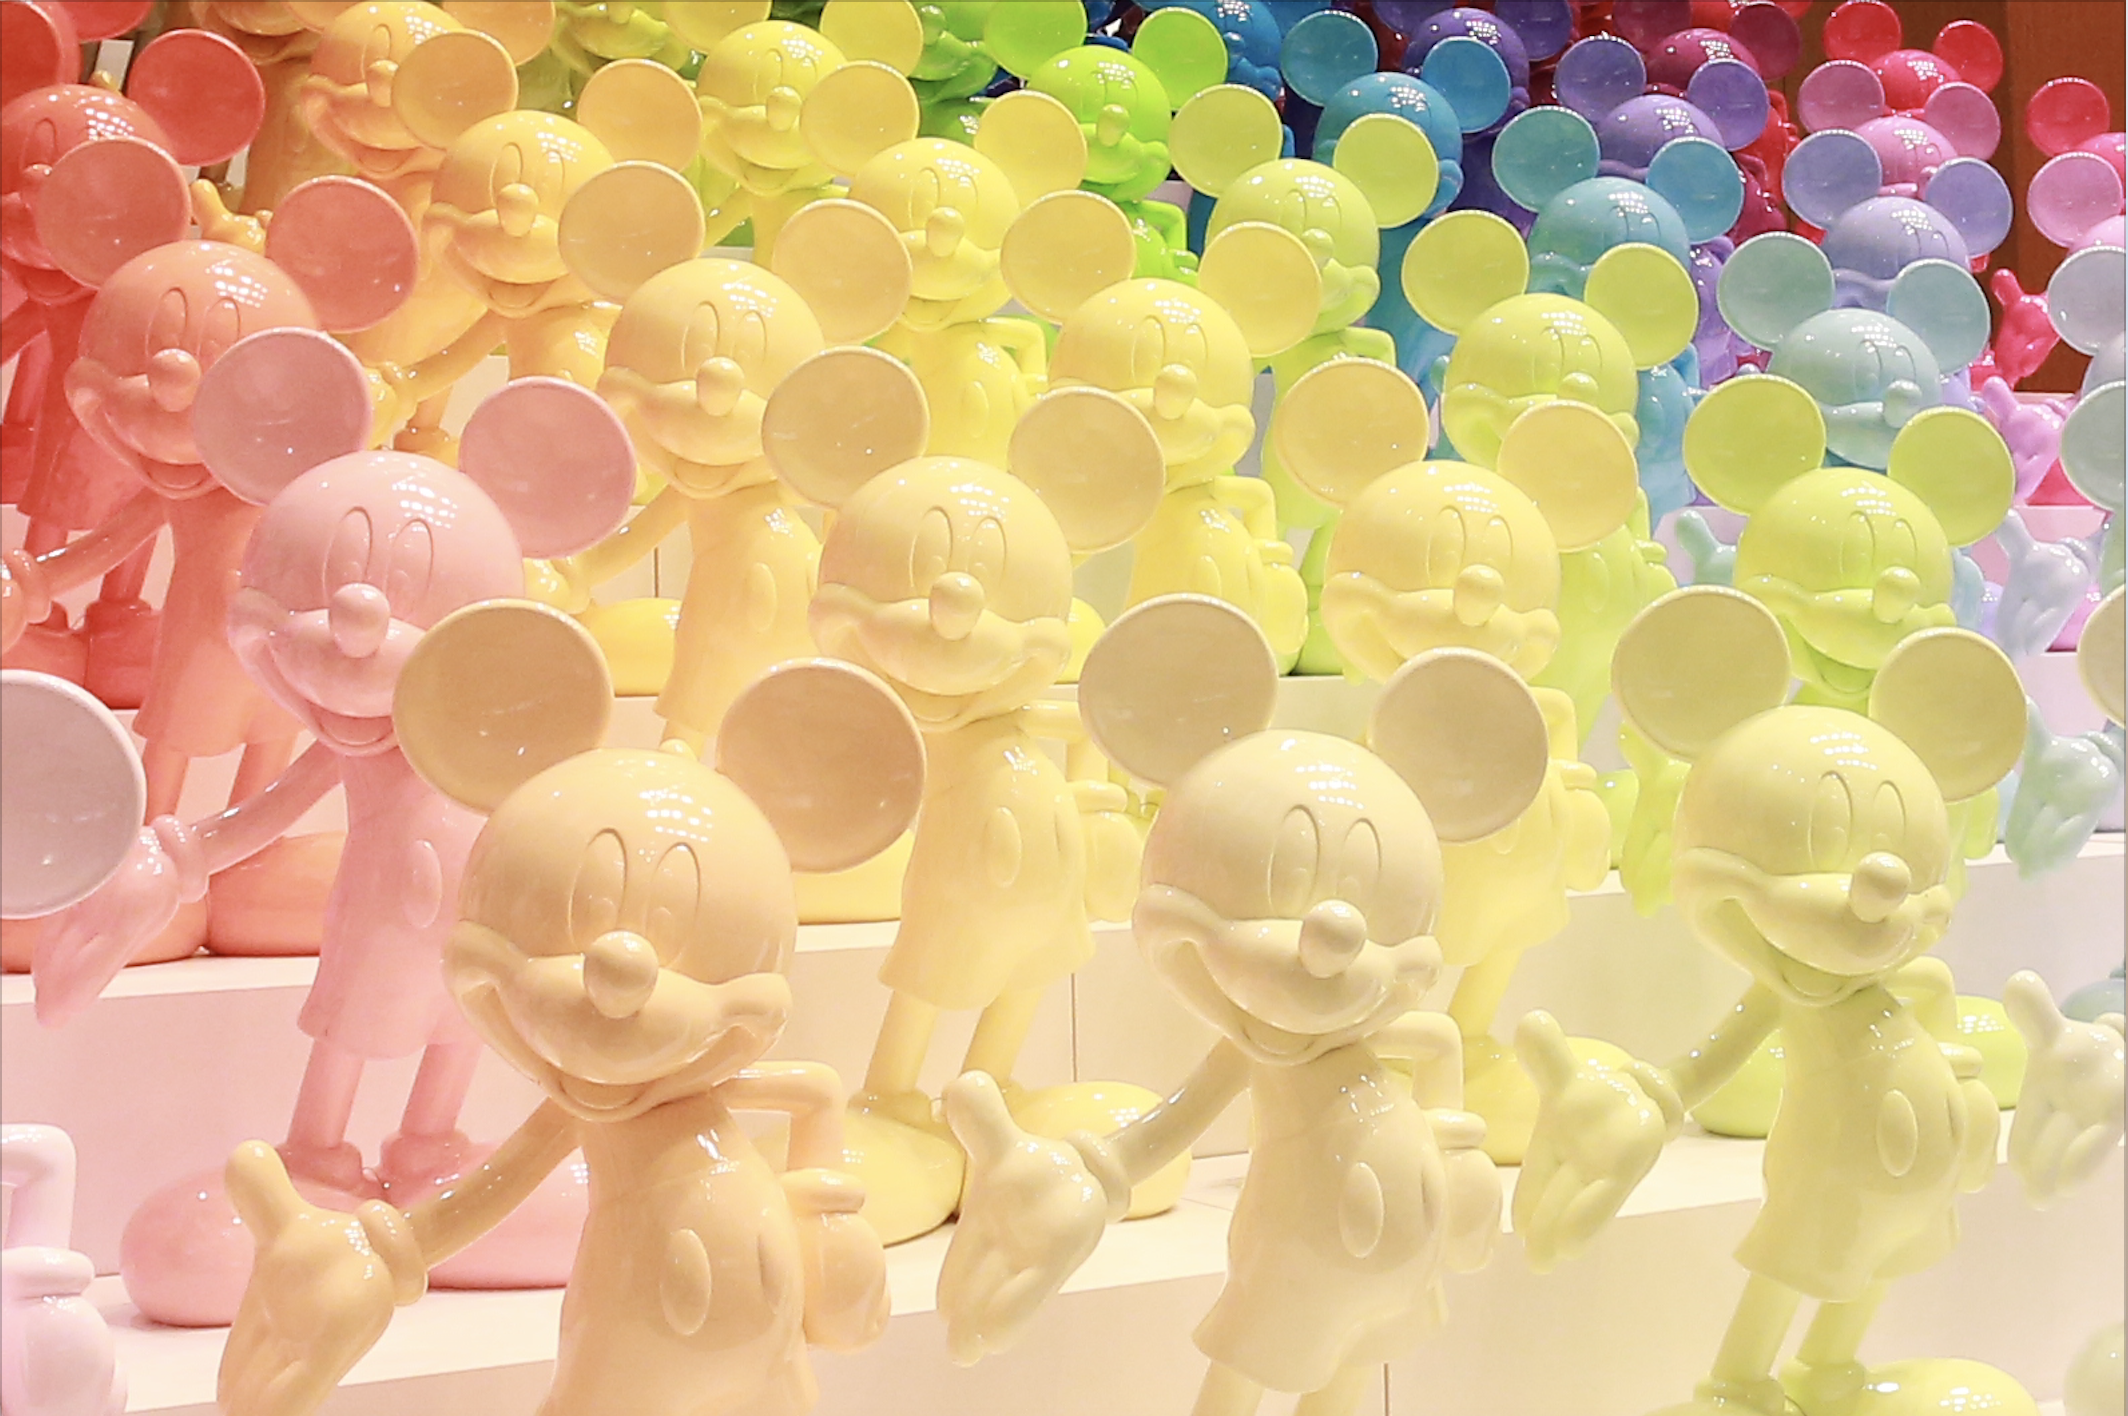 90色・90体のミッキーマウス立像